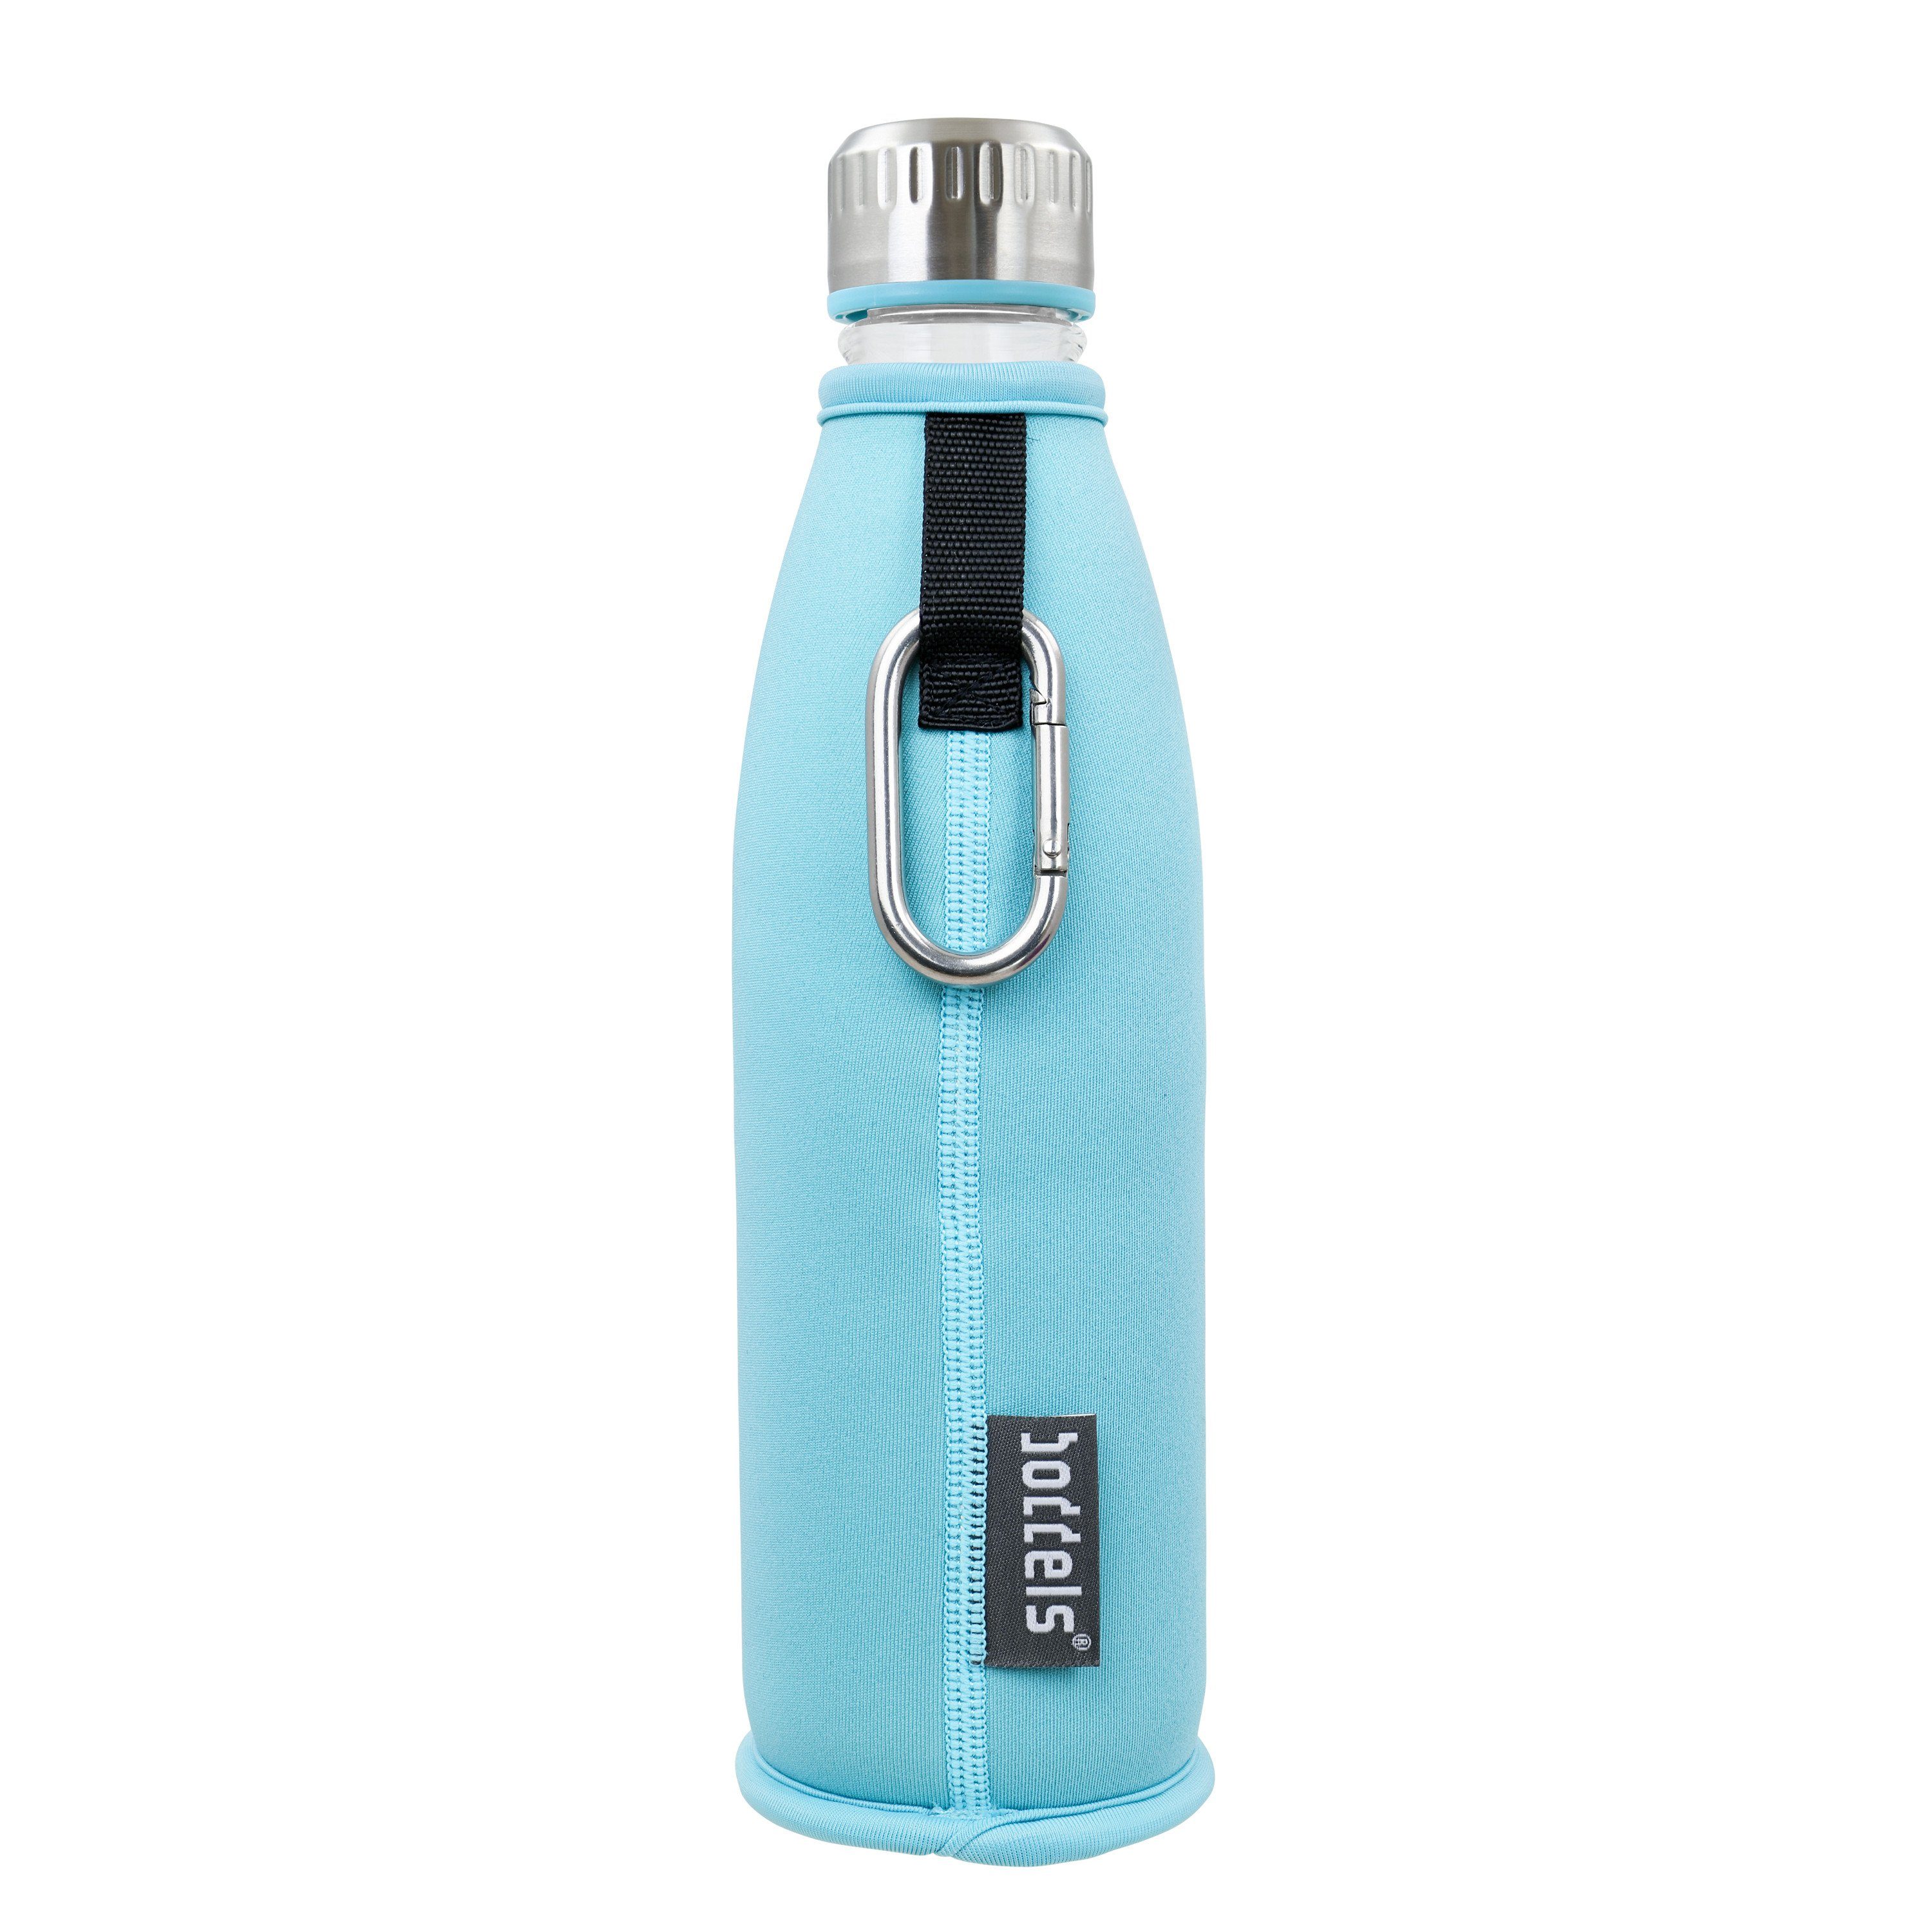 auslaufsicher, Flasche aus doppelwandig, Trinkflasche bruchfest Türkisblau Glas 650ml, DREE boddels